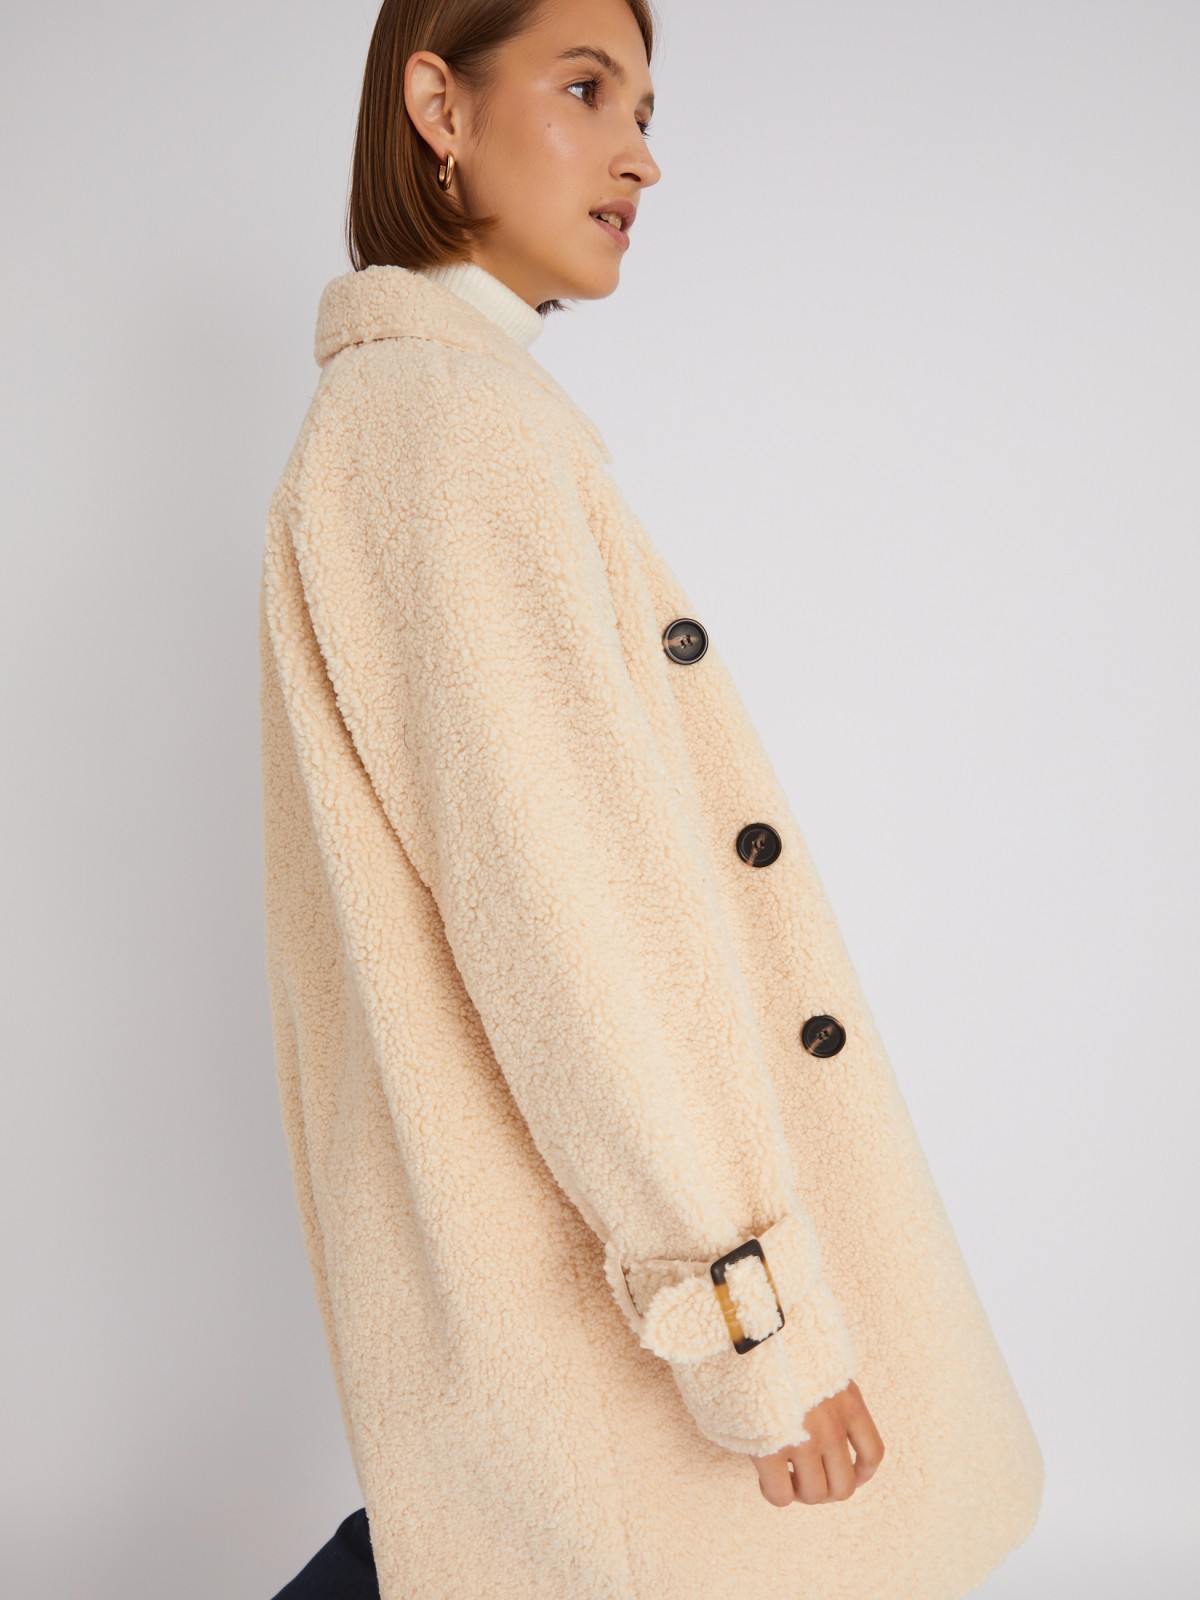 Удлинённая шуба-пальто оверсайз силуэта из искусственного меха под овчину zolla 02333550L114, цвет молоко, размер XS - фото 4